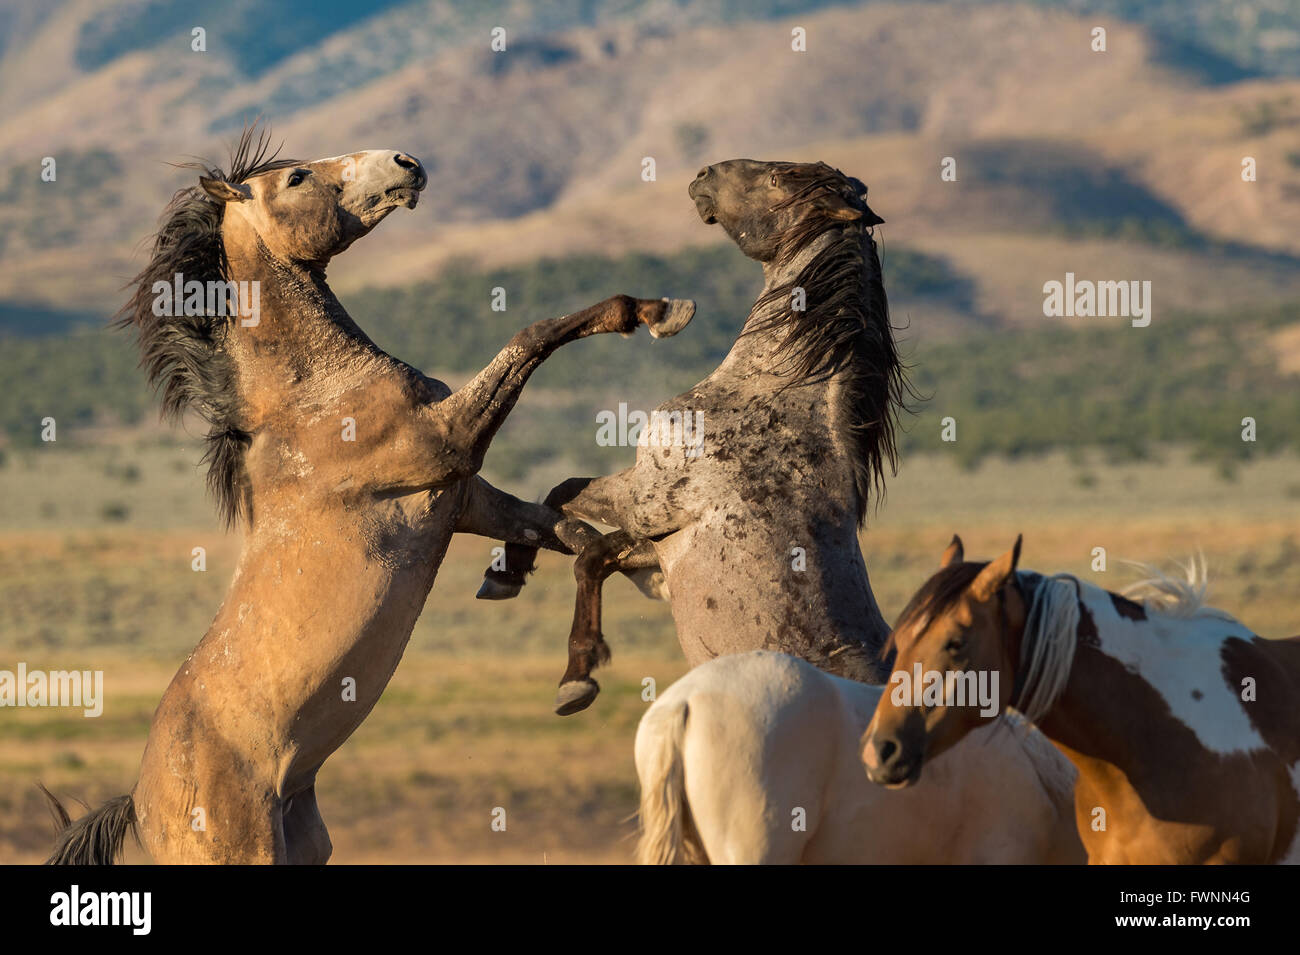 Wild horses fighting. Stock Photo